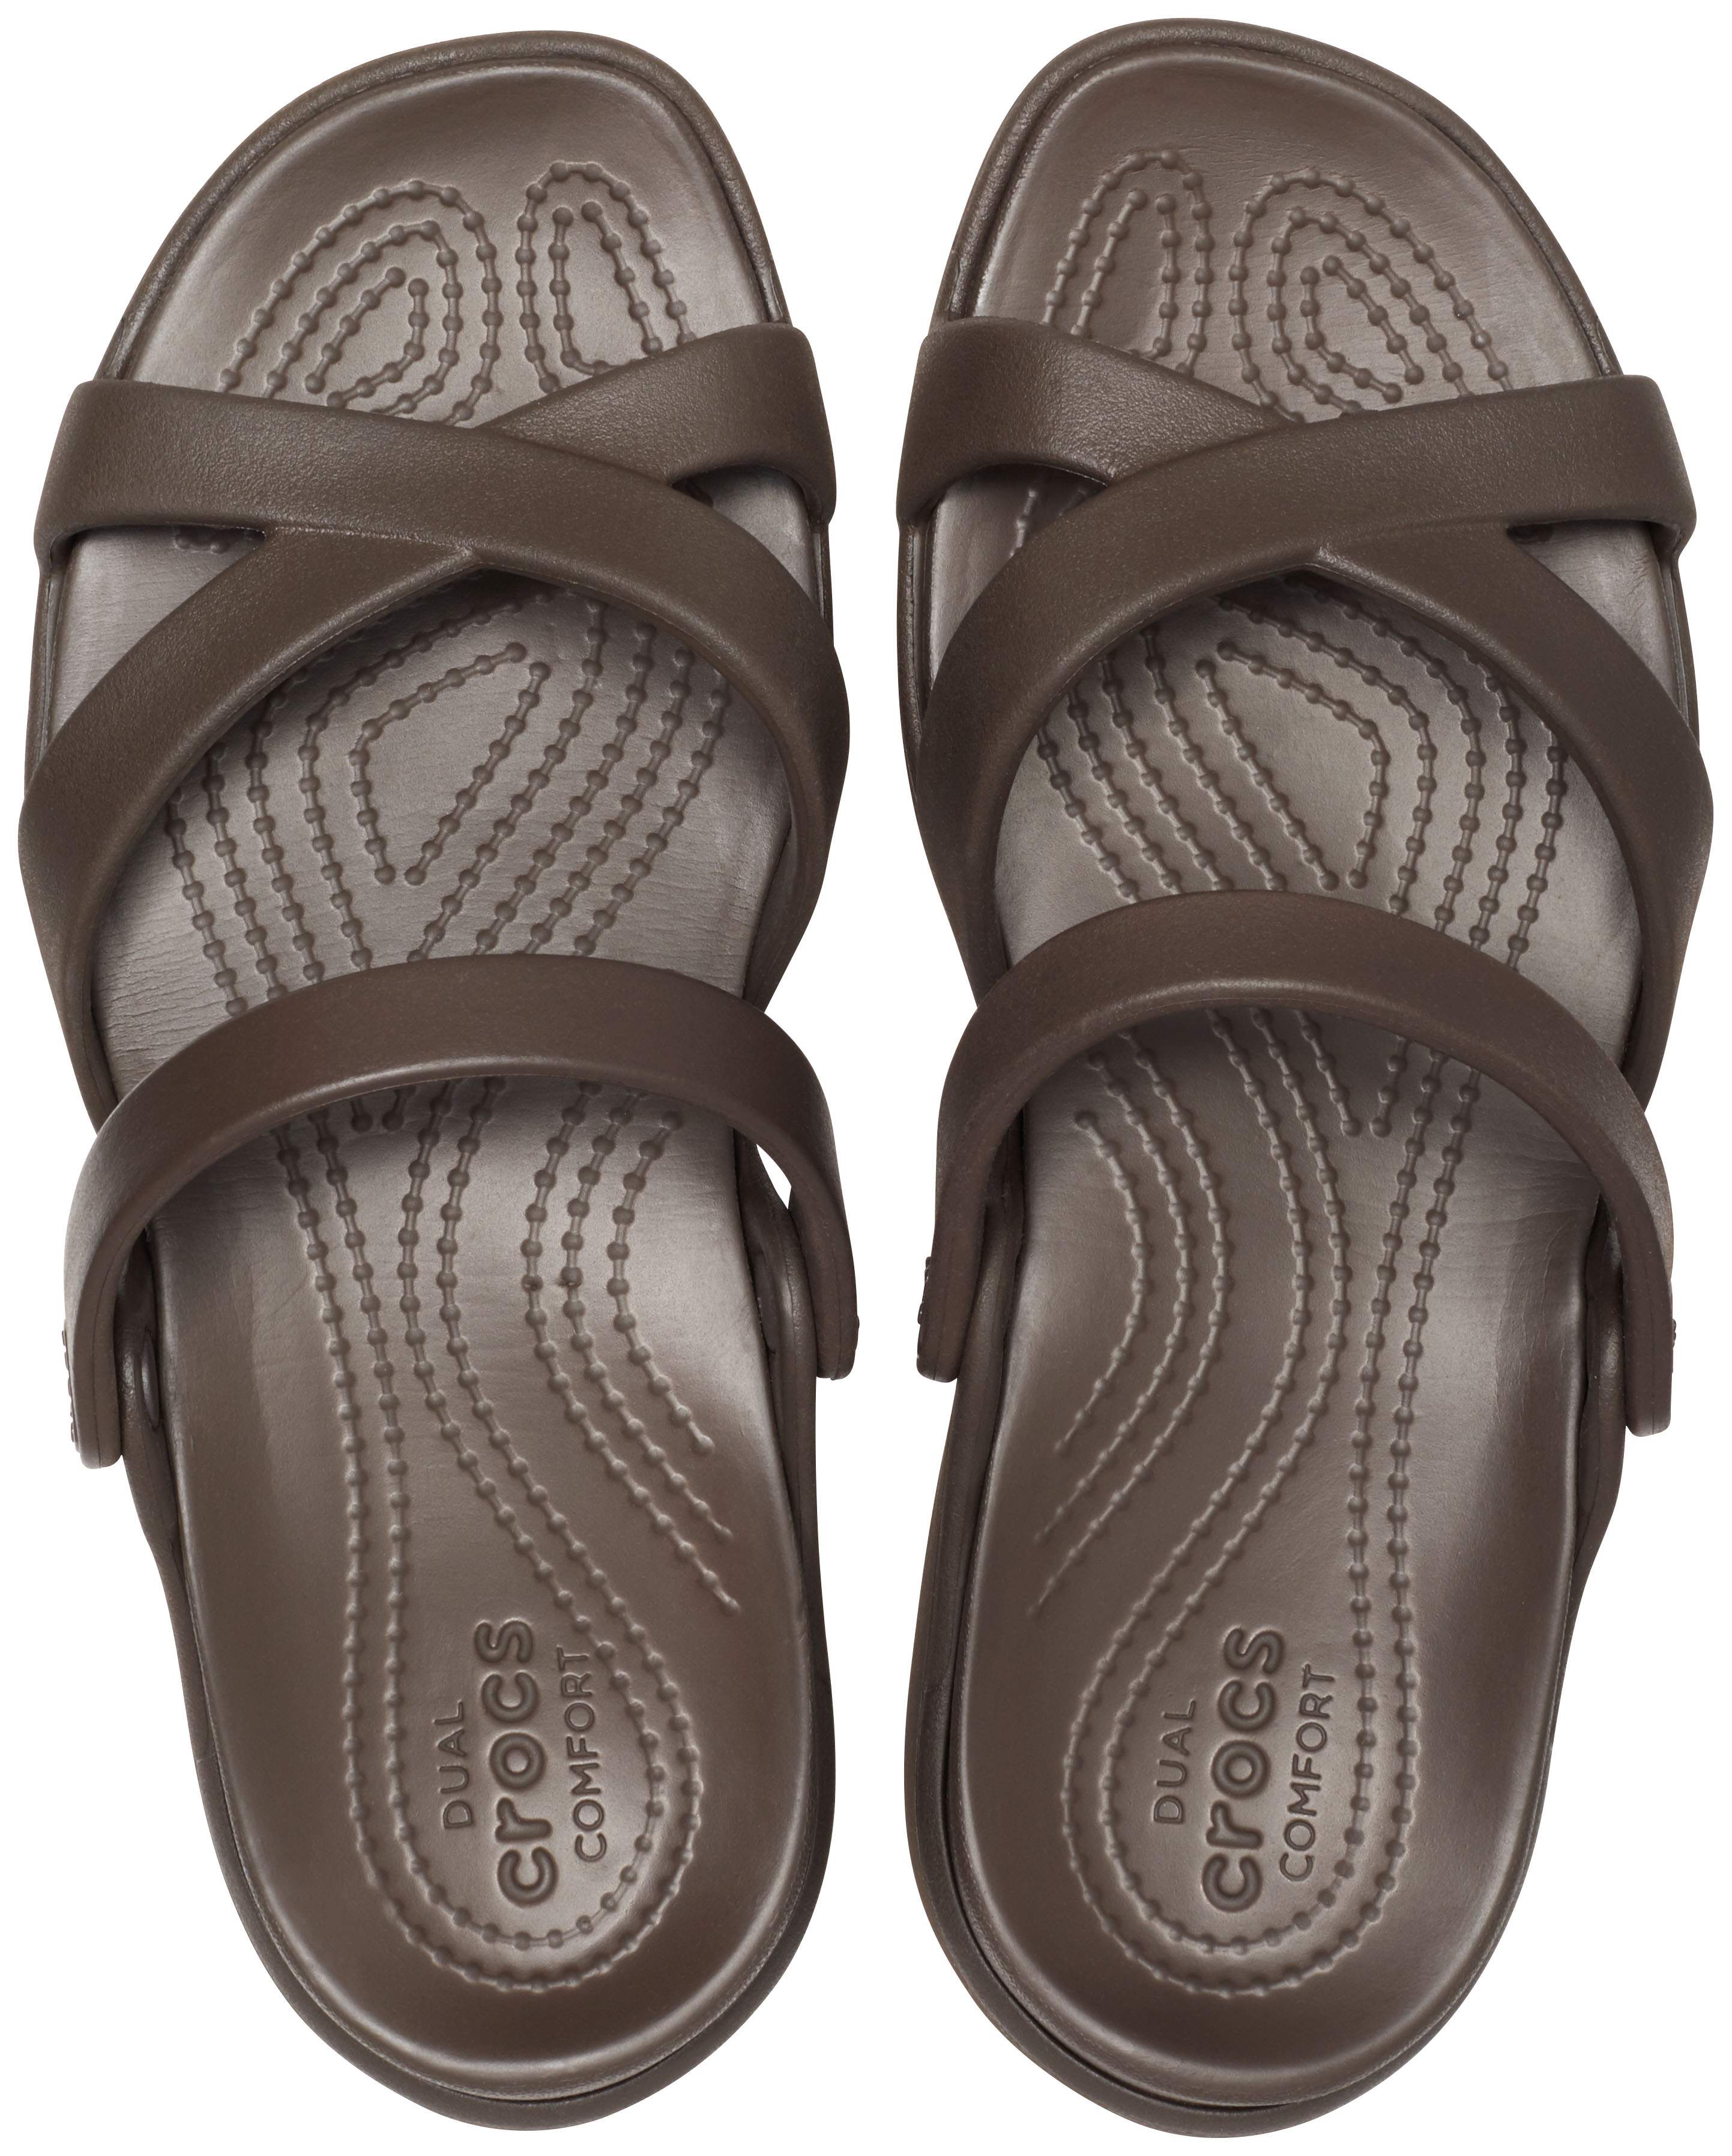 crocs crossband sandals